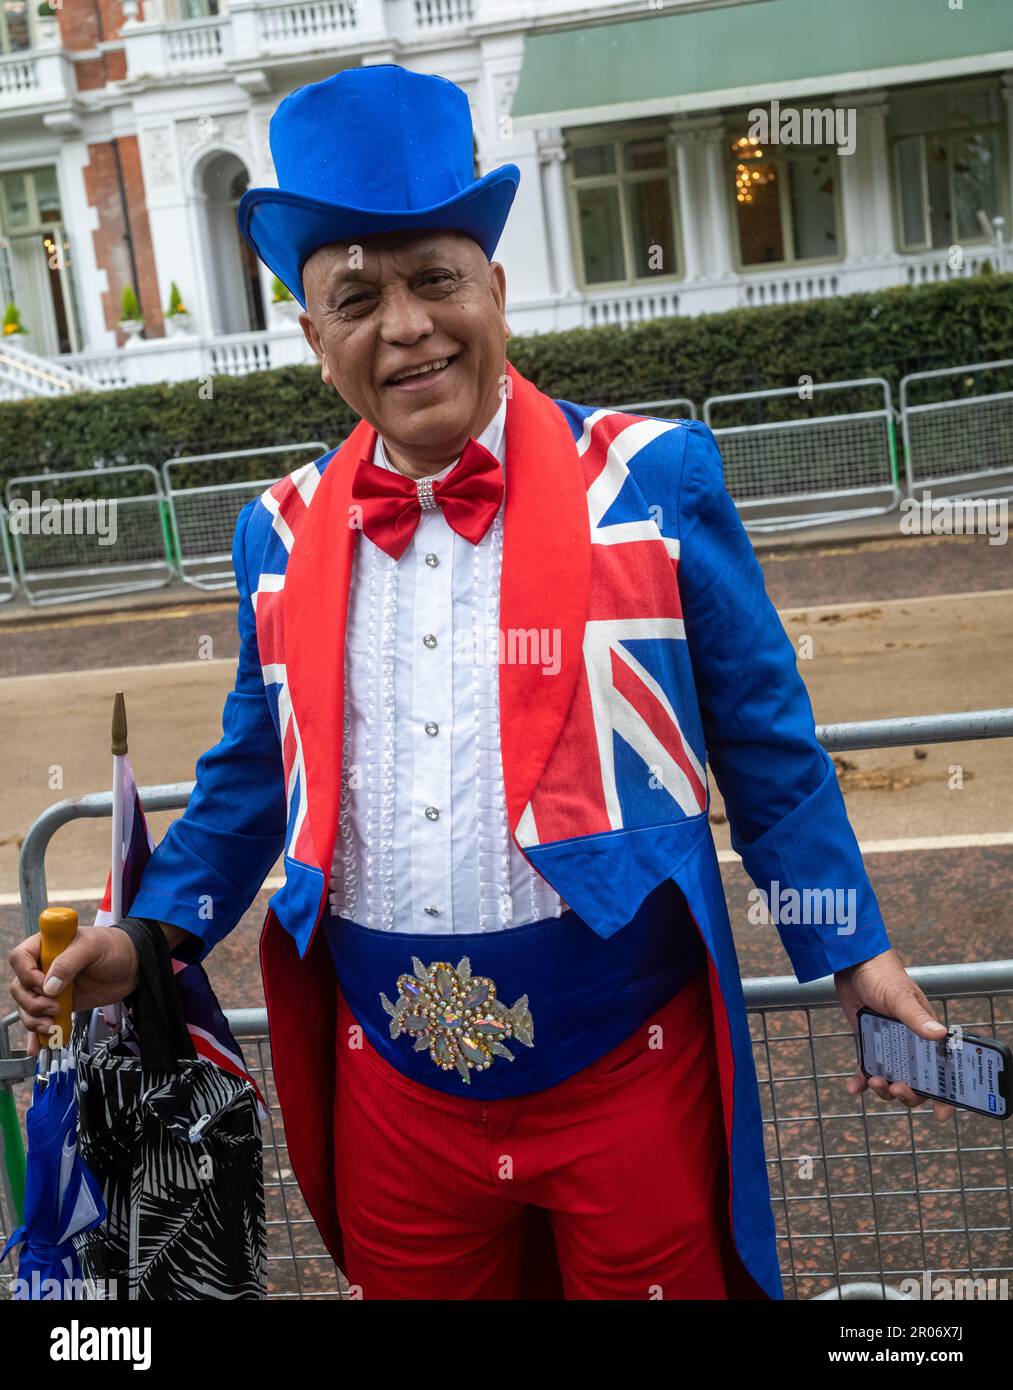 Un homme noir d'âge moyen vêtu d'un chapeau haut et d'une queue hauts en couleur, orné du drapeau syndical, se porte avec enthousiasme le jour du roi Charles III Banque D'Images